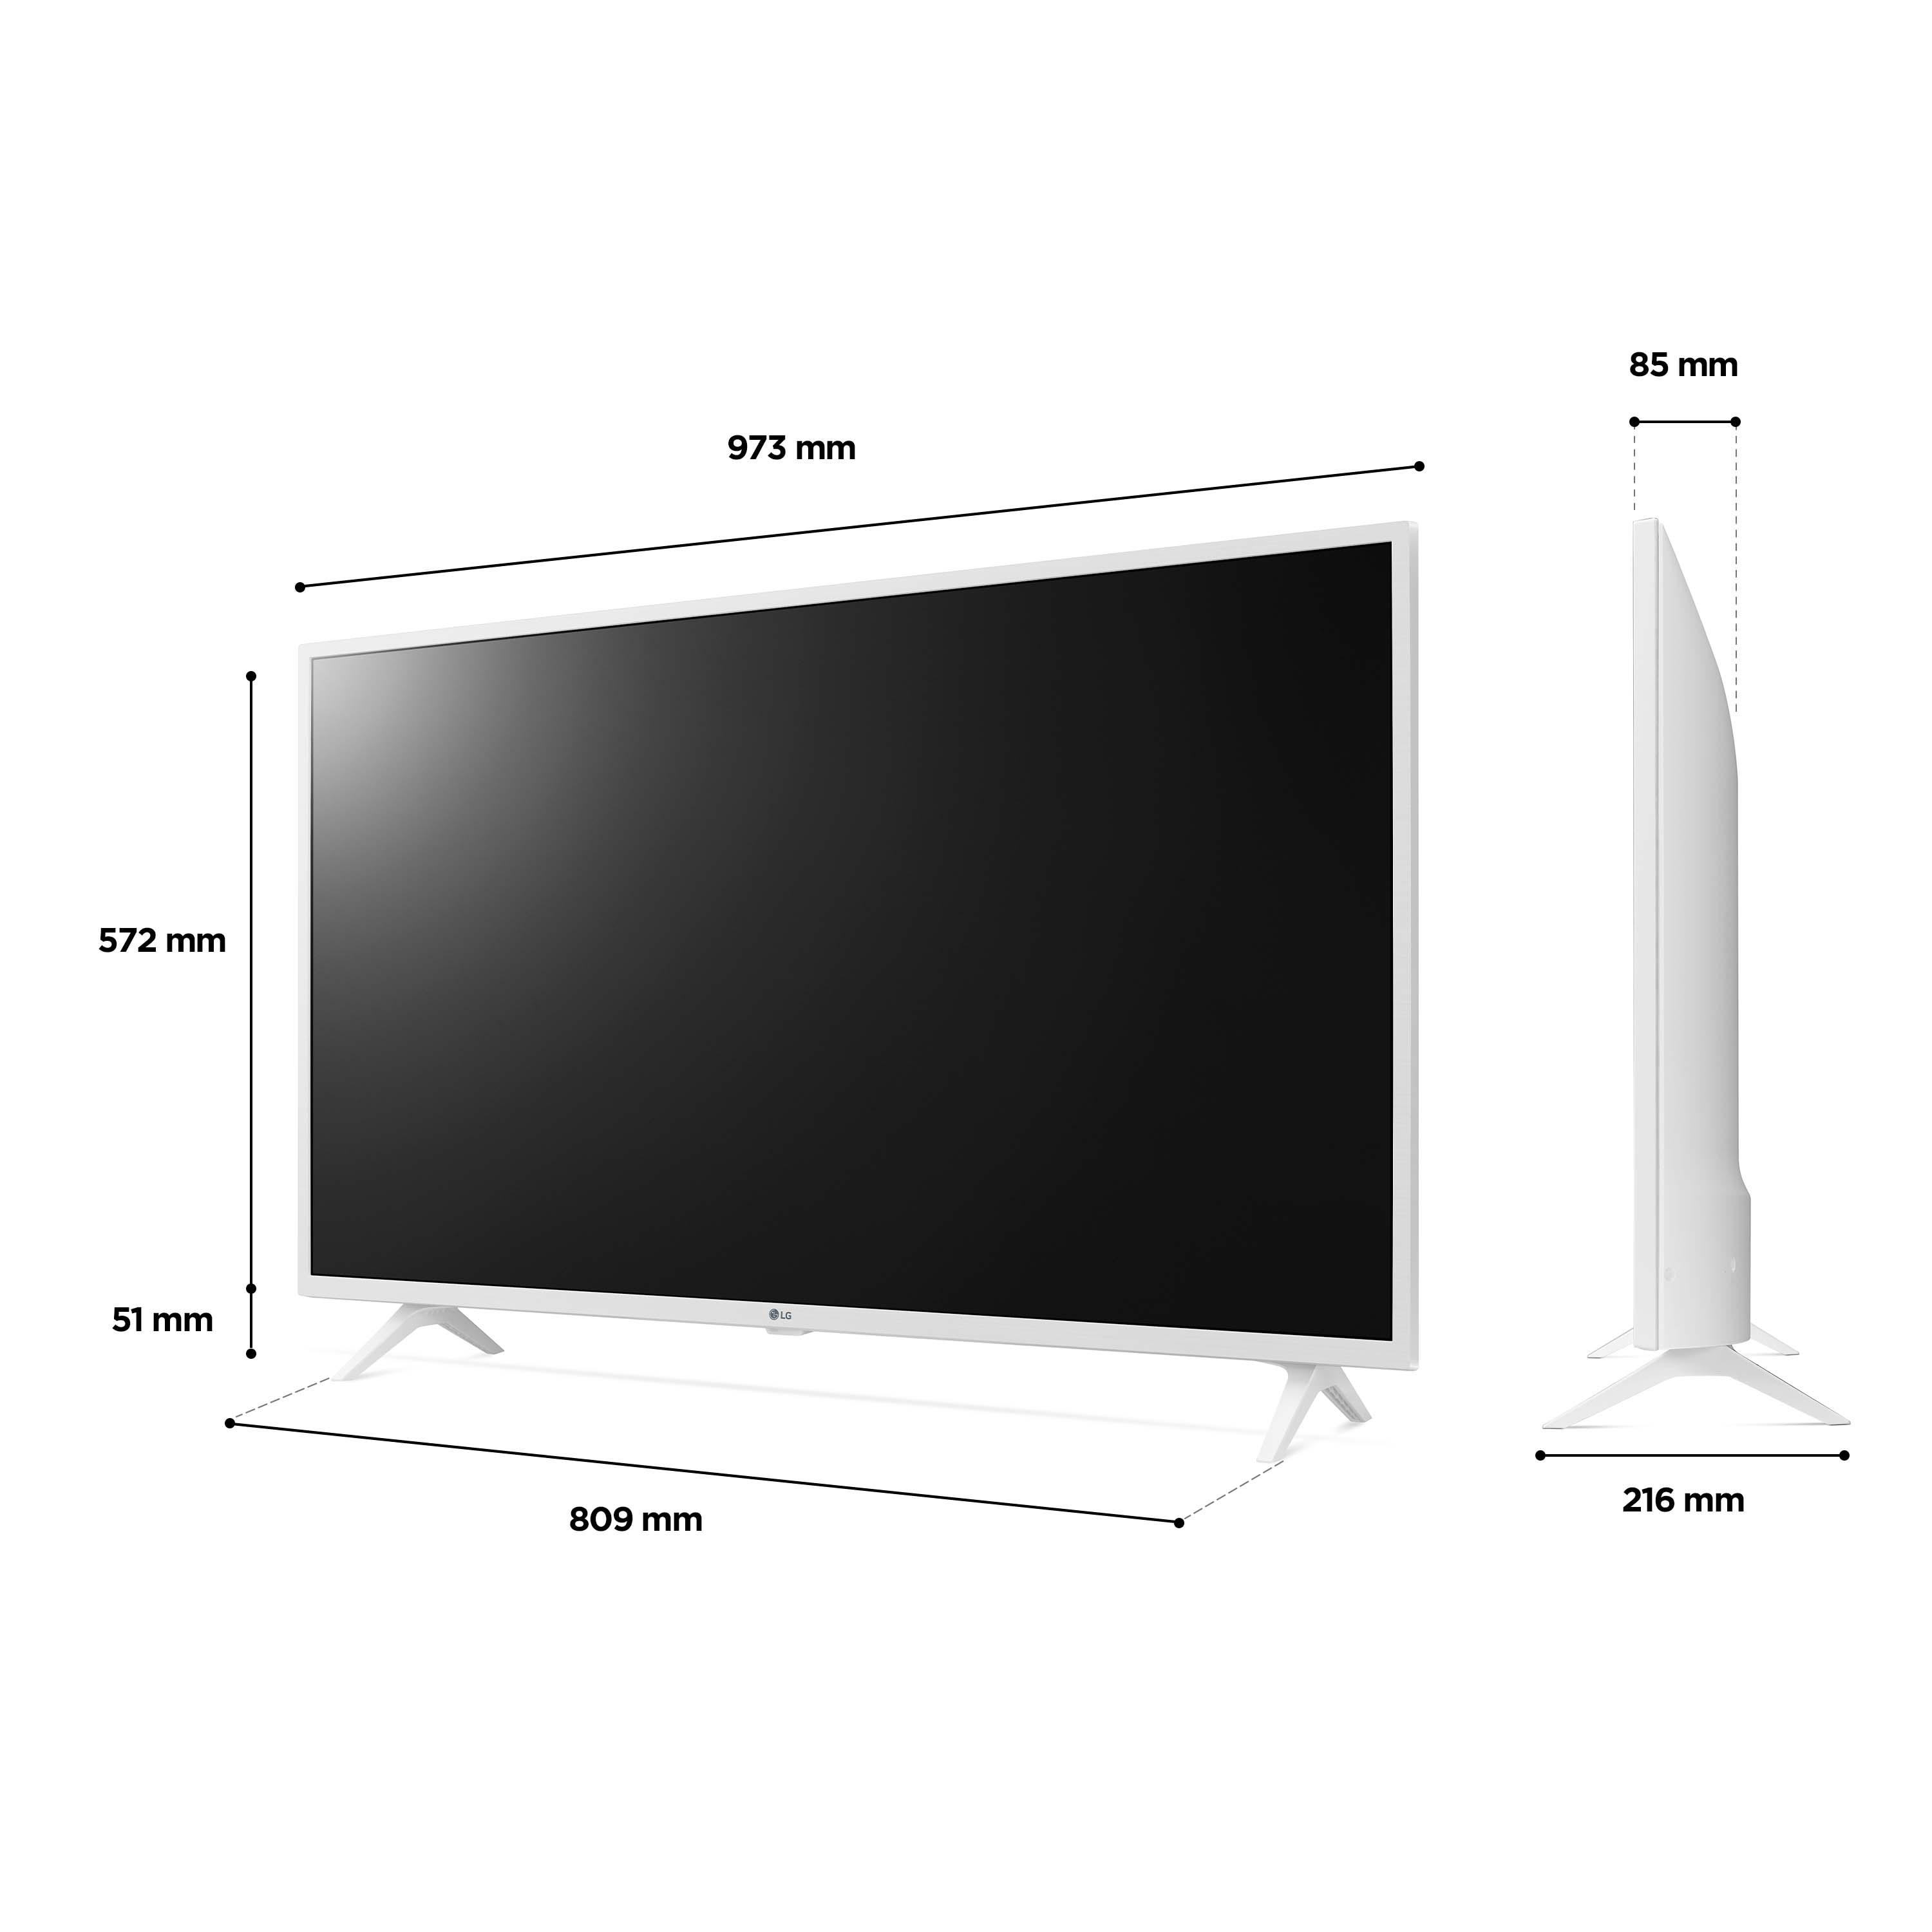 LG LED UQ76 43 inch 4K Smart TV 2022, 43UQ76906LE